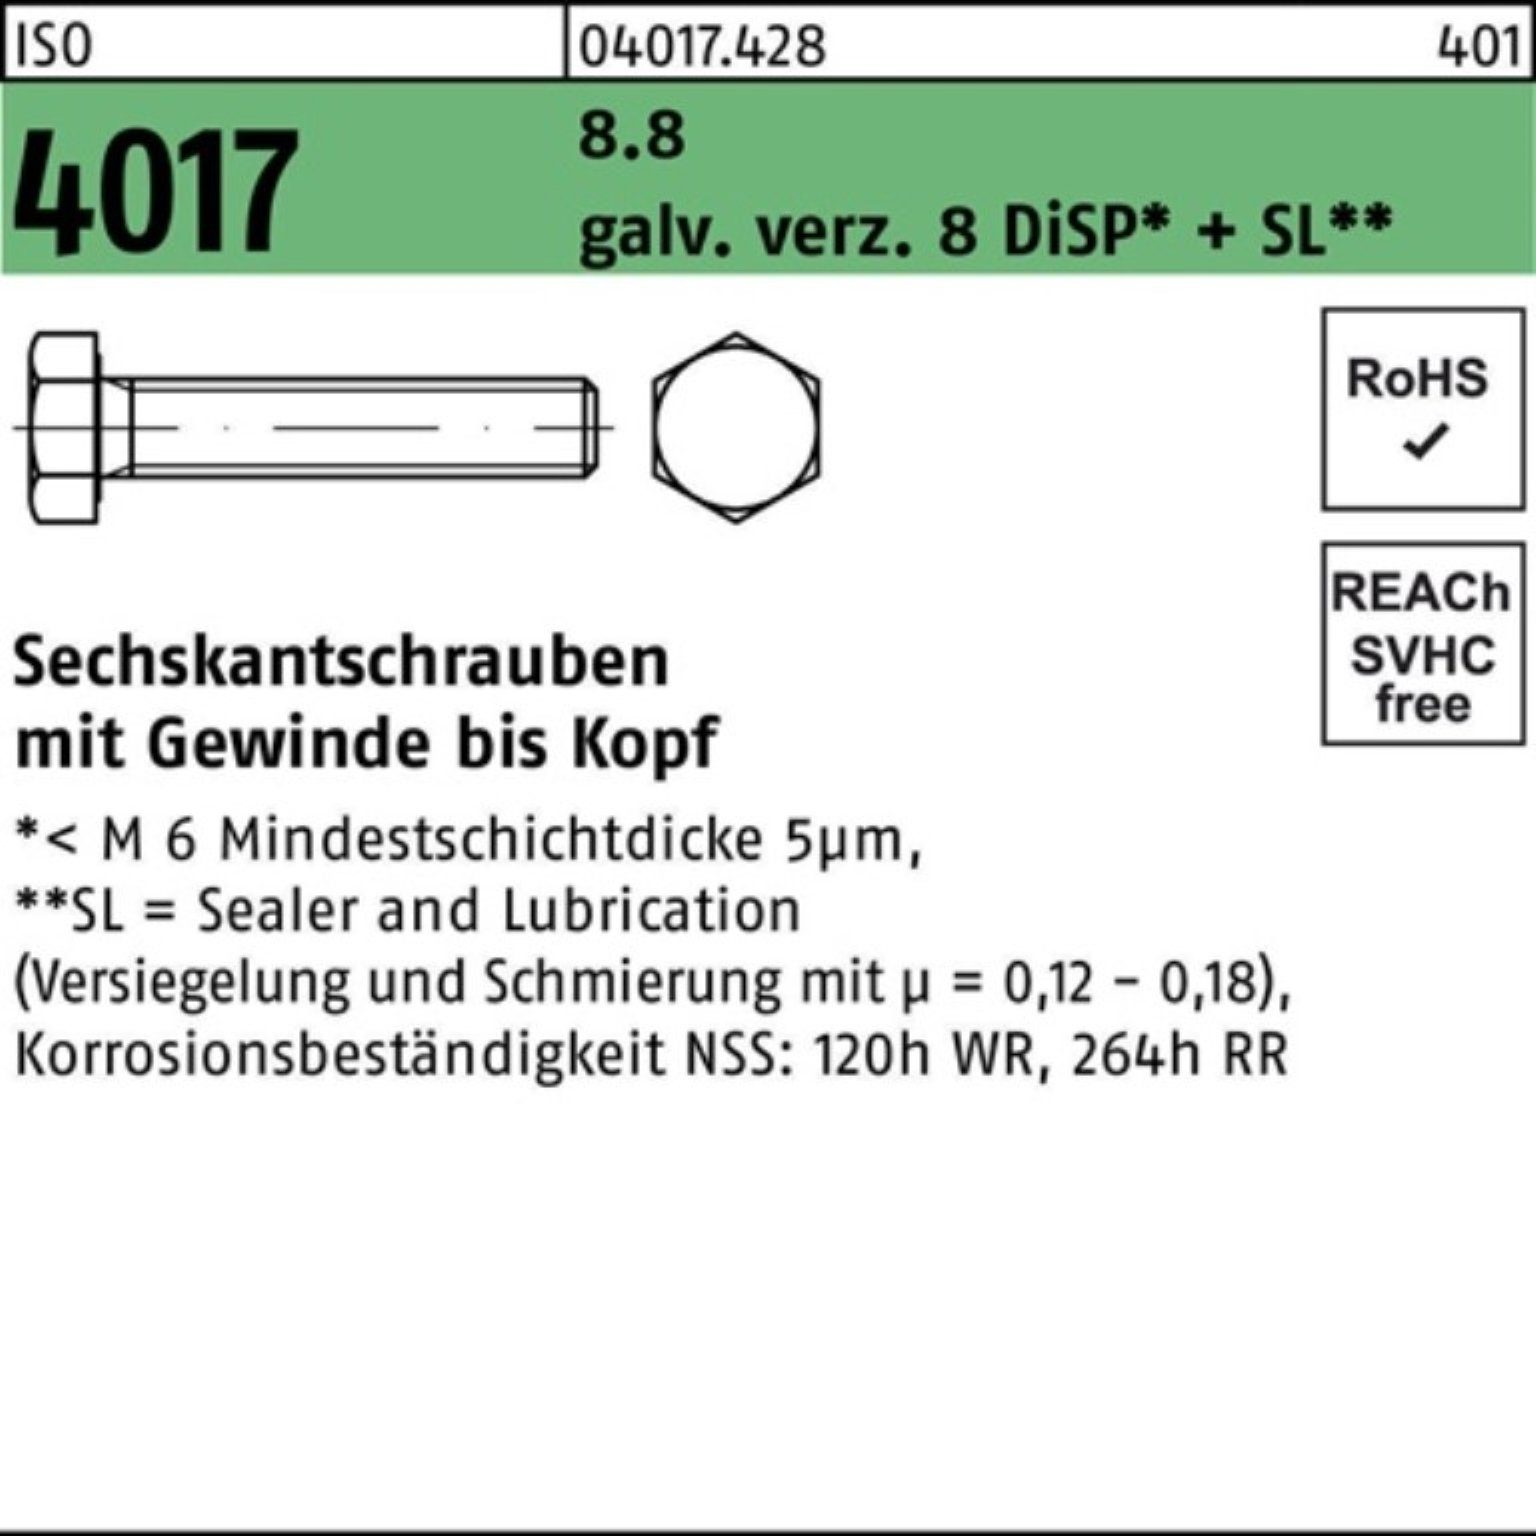 Bufab Sechskantschraube 200er Pack Sechskantschraube ISO 4017 VG M8x 14 8.8 galv.verz. 8 DiSP+